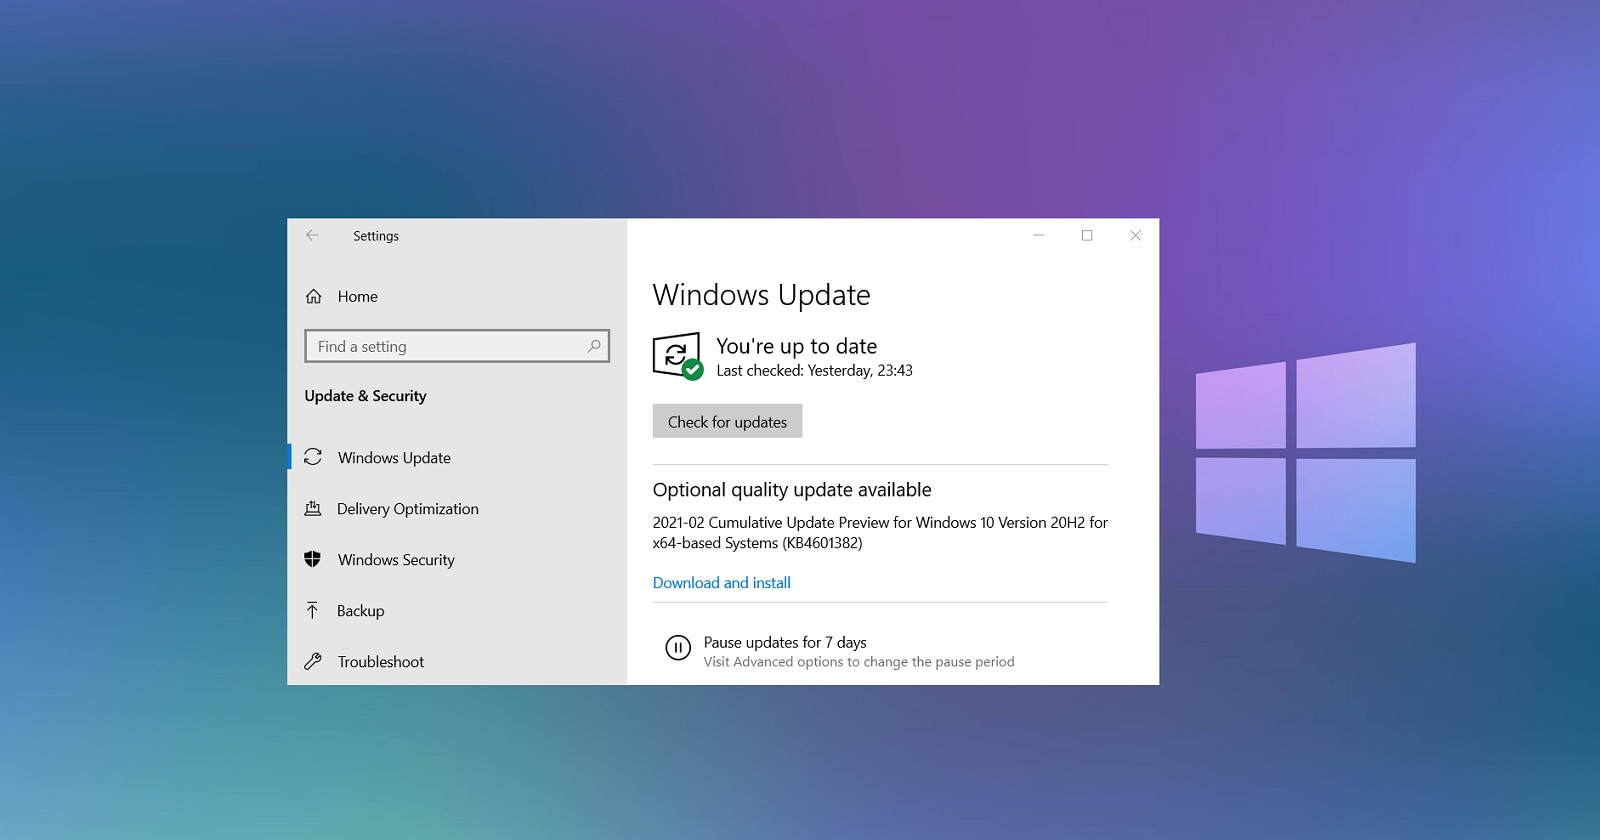 Обновления windows 10 pro x64. Обновление виндовс 10 20h2. Windows 10, версия 20h2. Инсталлятор Windows 10. Новое обновление виндовс 10.